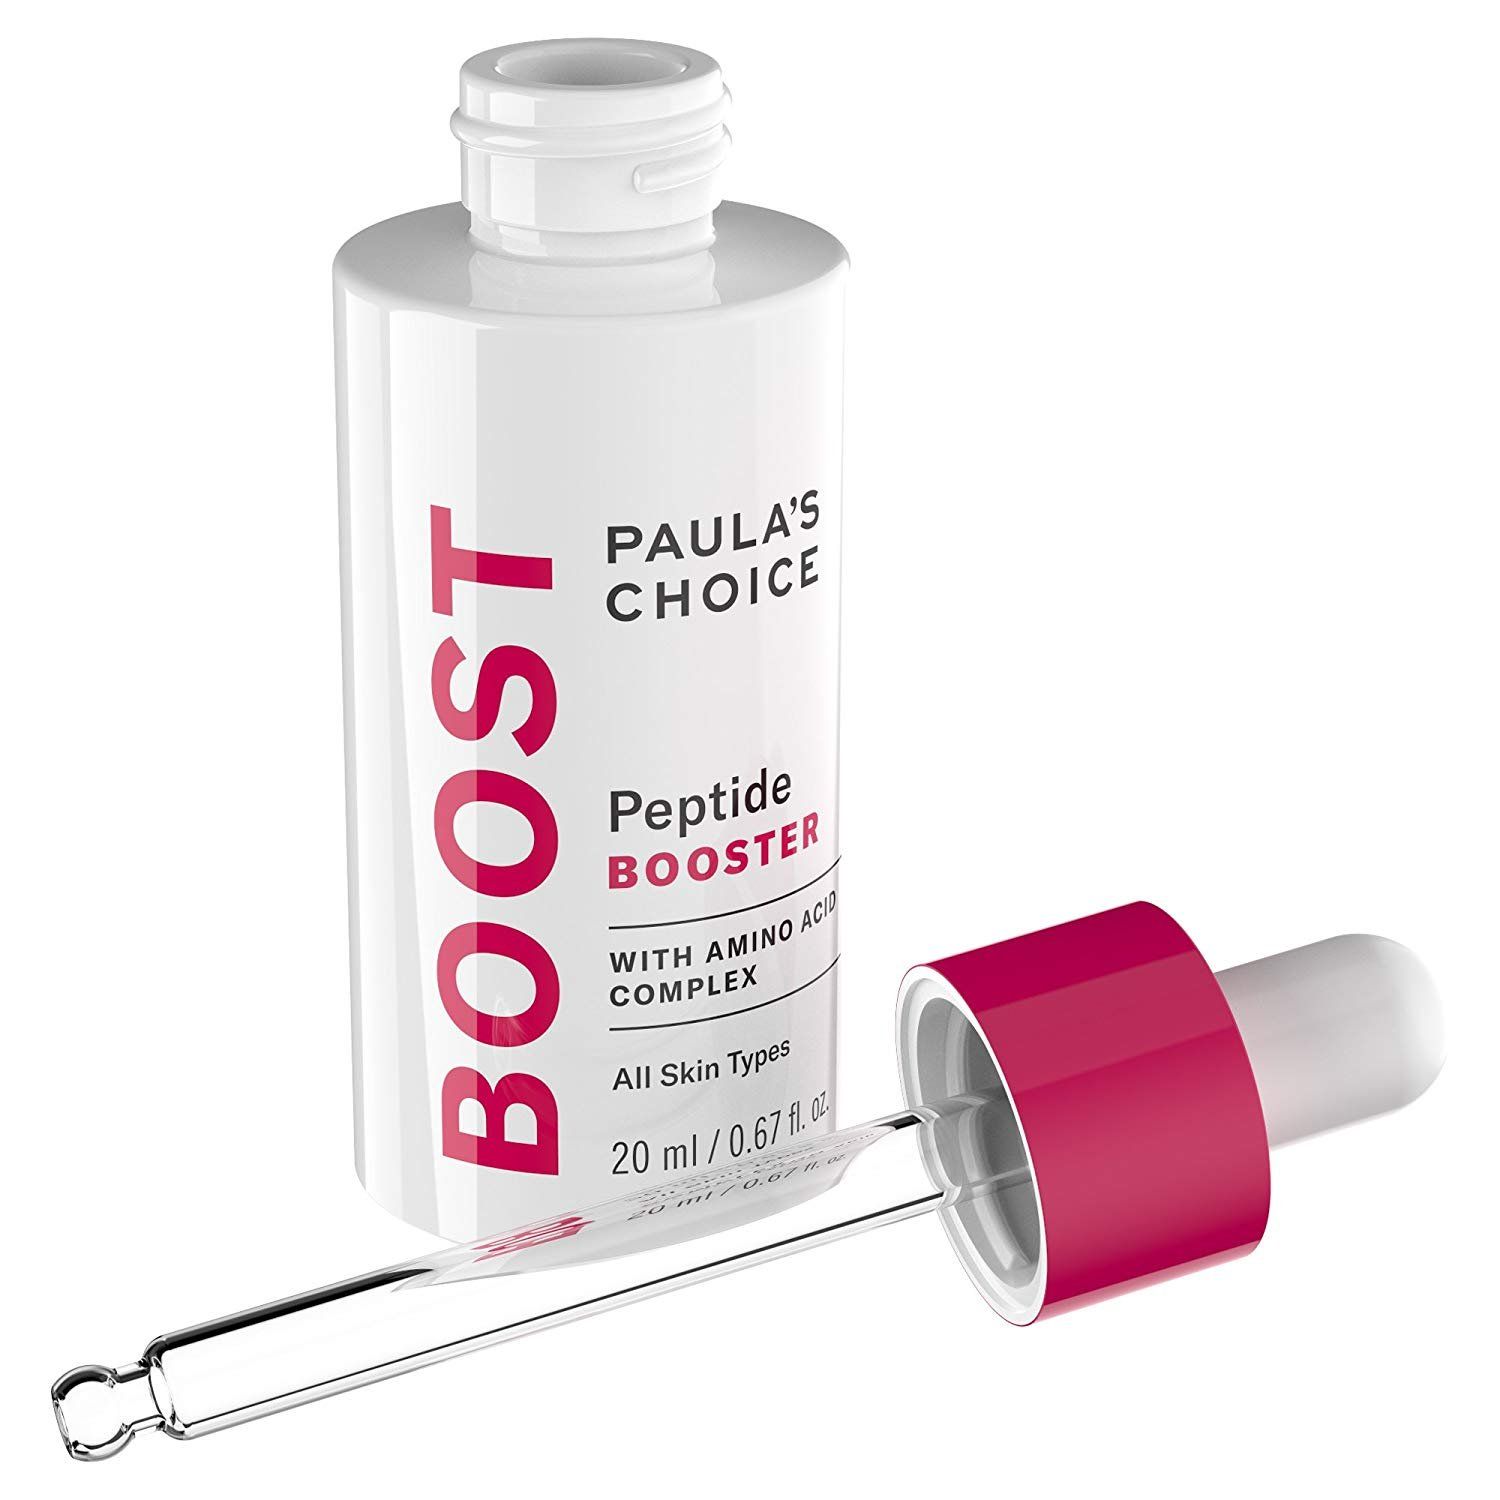  Tinh chất tăng cường làm săn da - Paula's Choice Peptide Booster (20ml) 